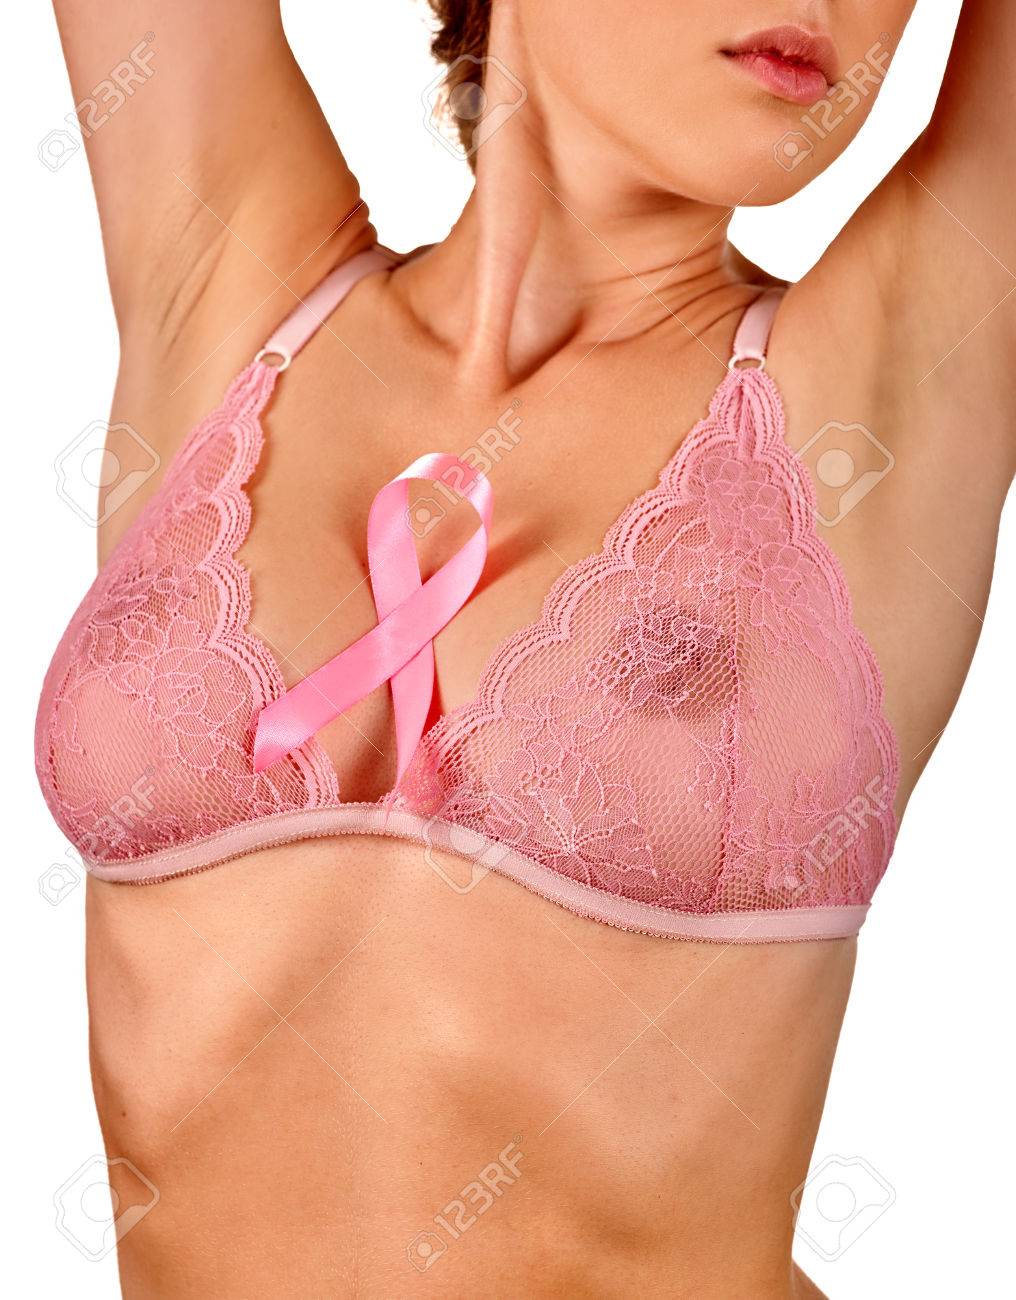 Breast and bra pics